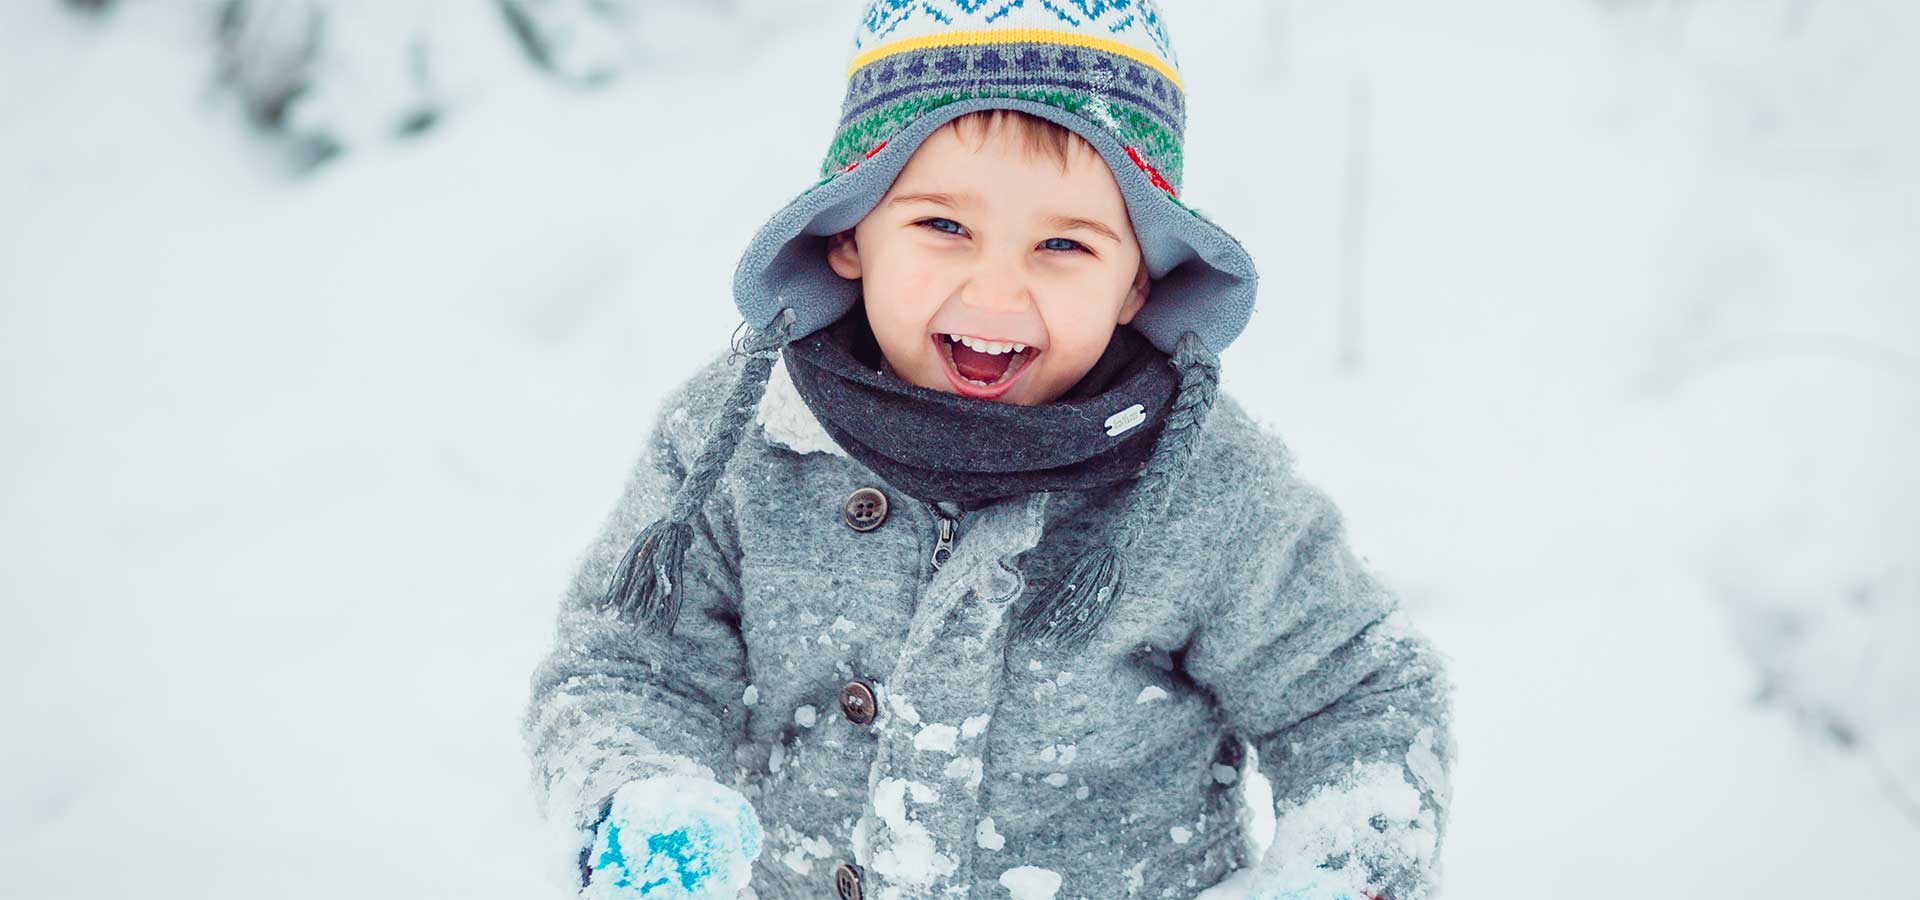 پوشش مناسب کودک در زمستان